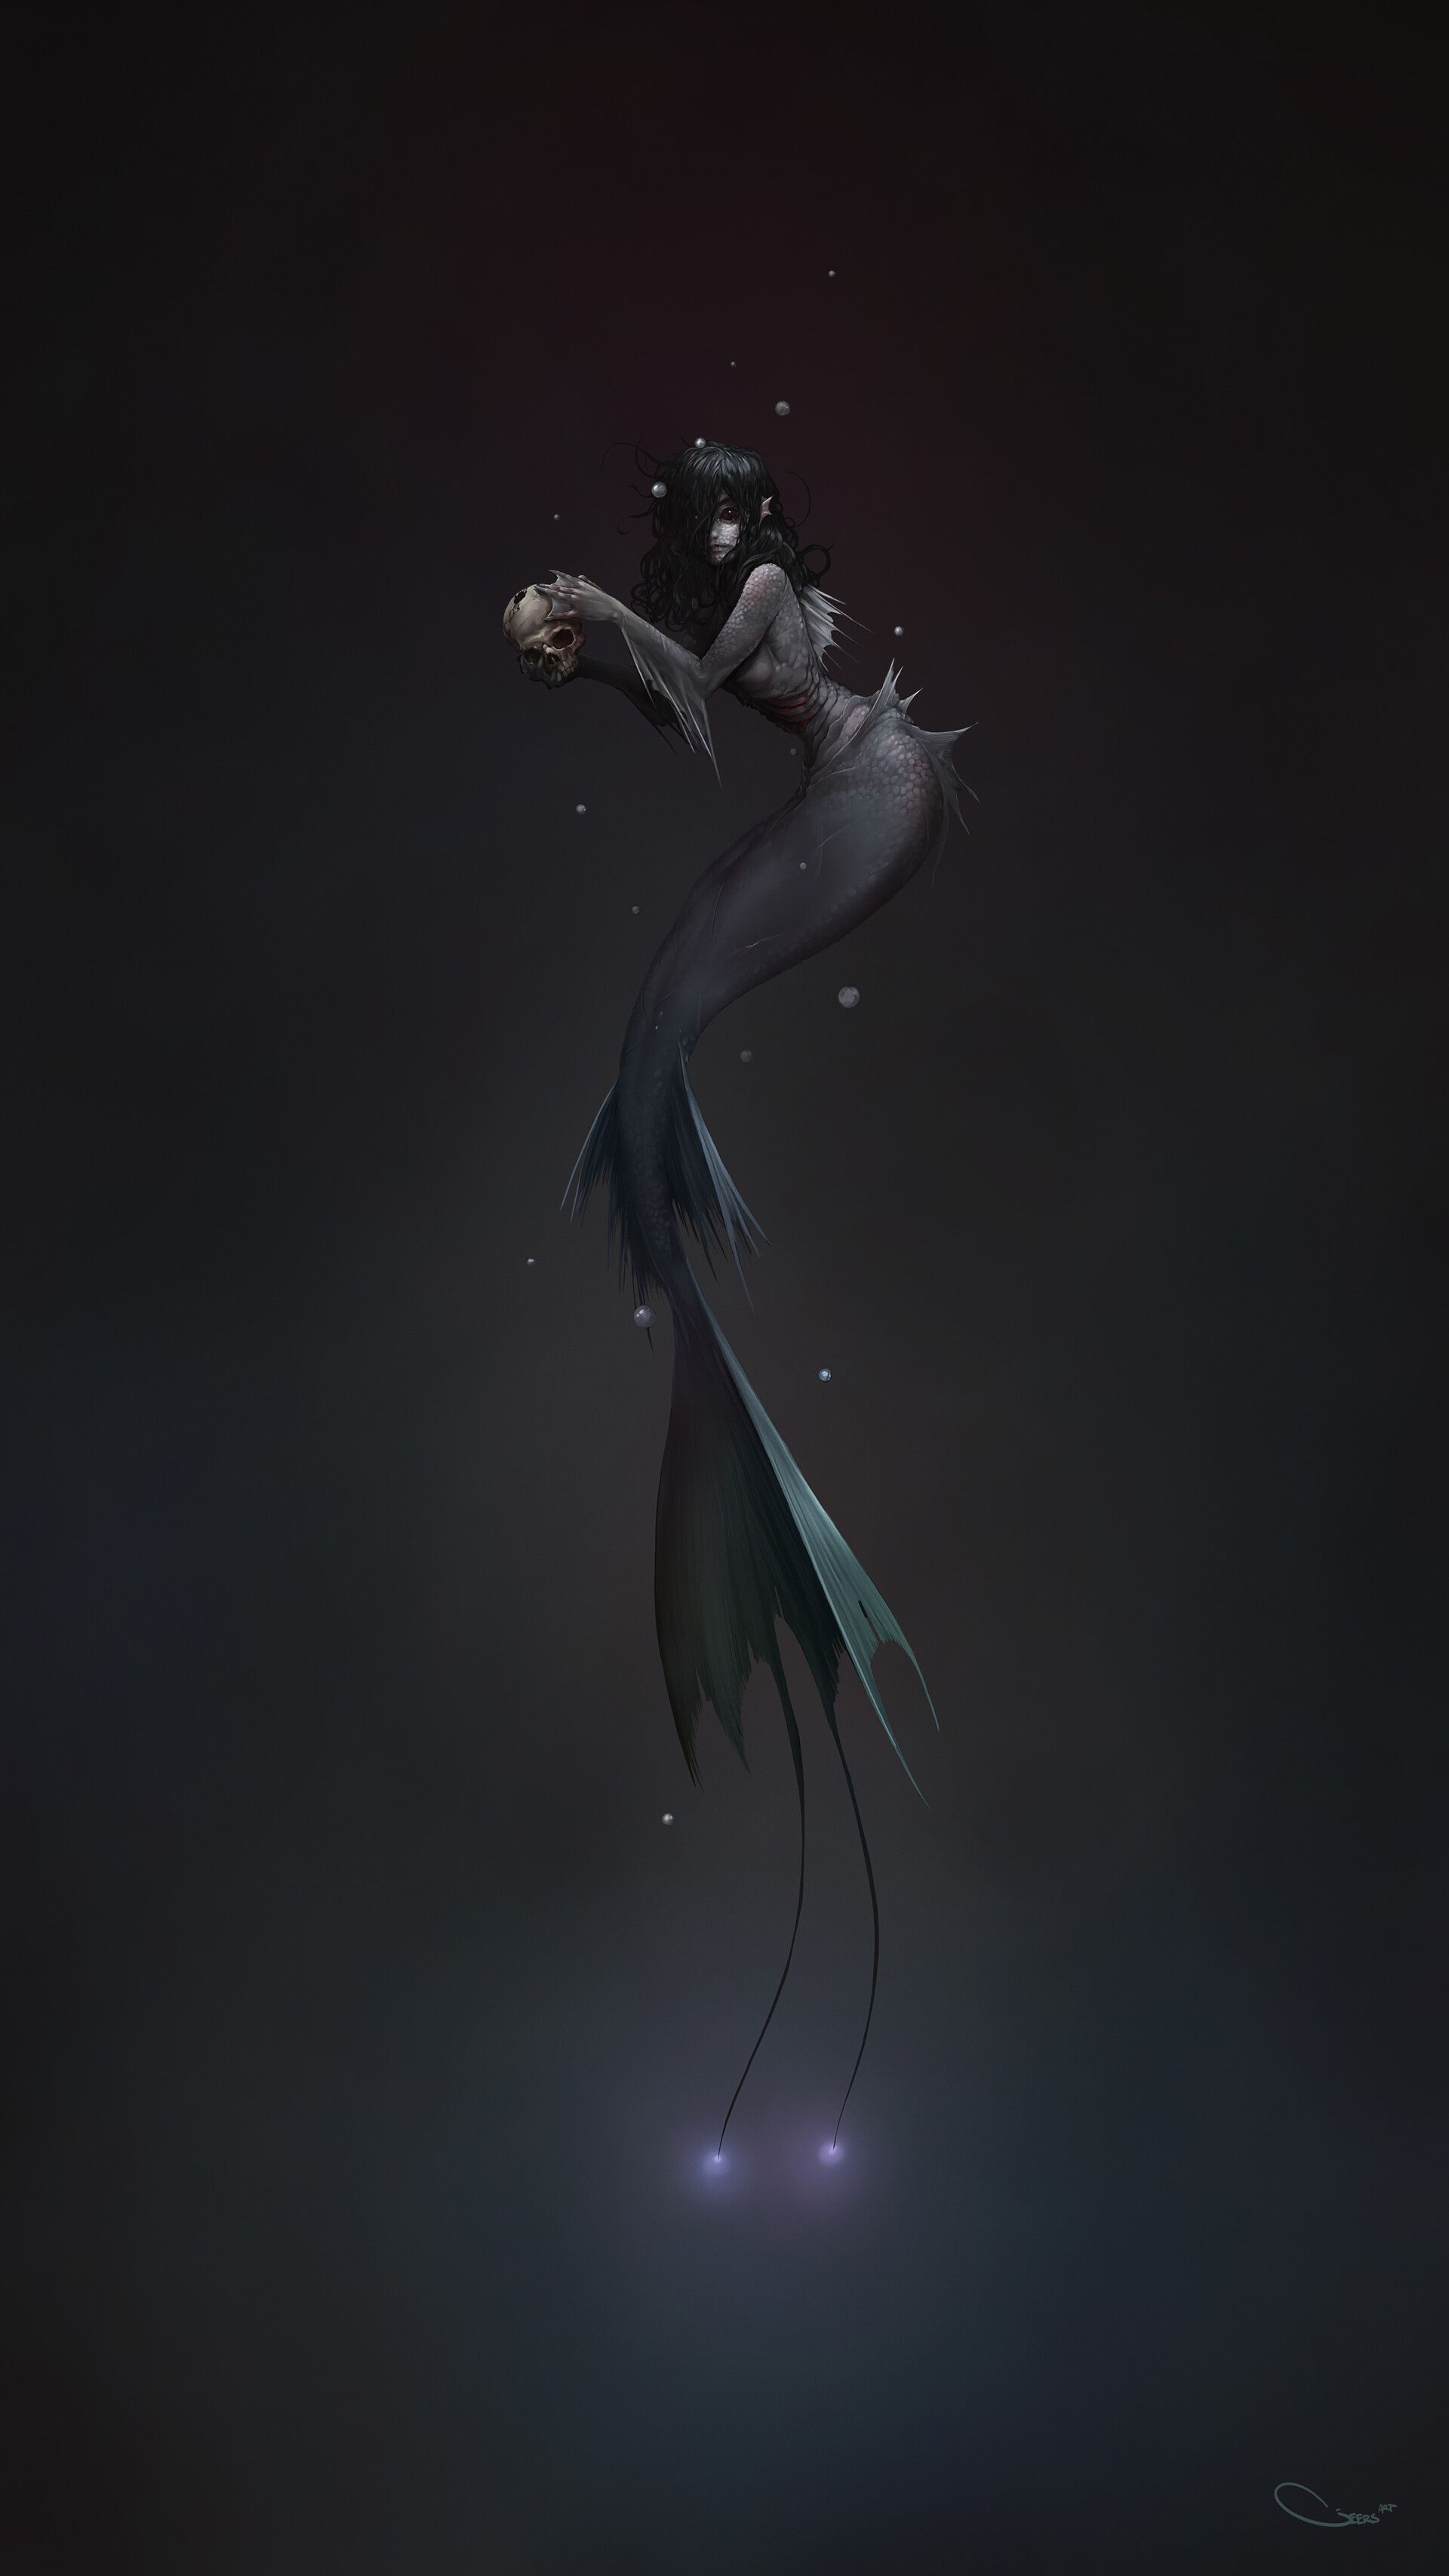 Mermaid, Darren Geers